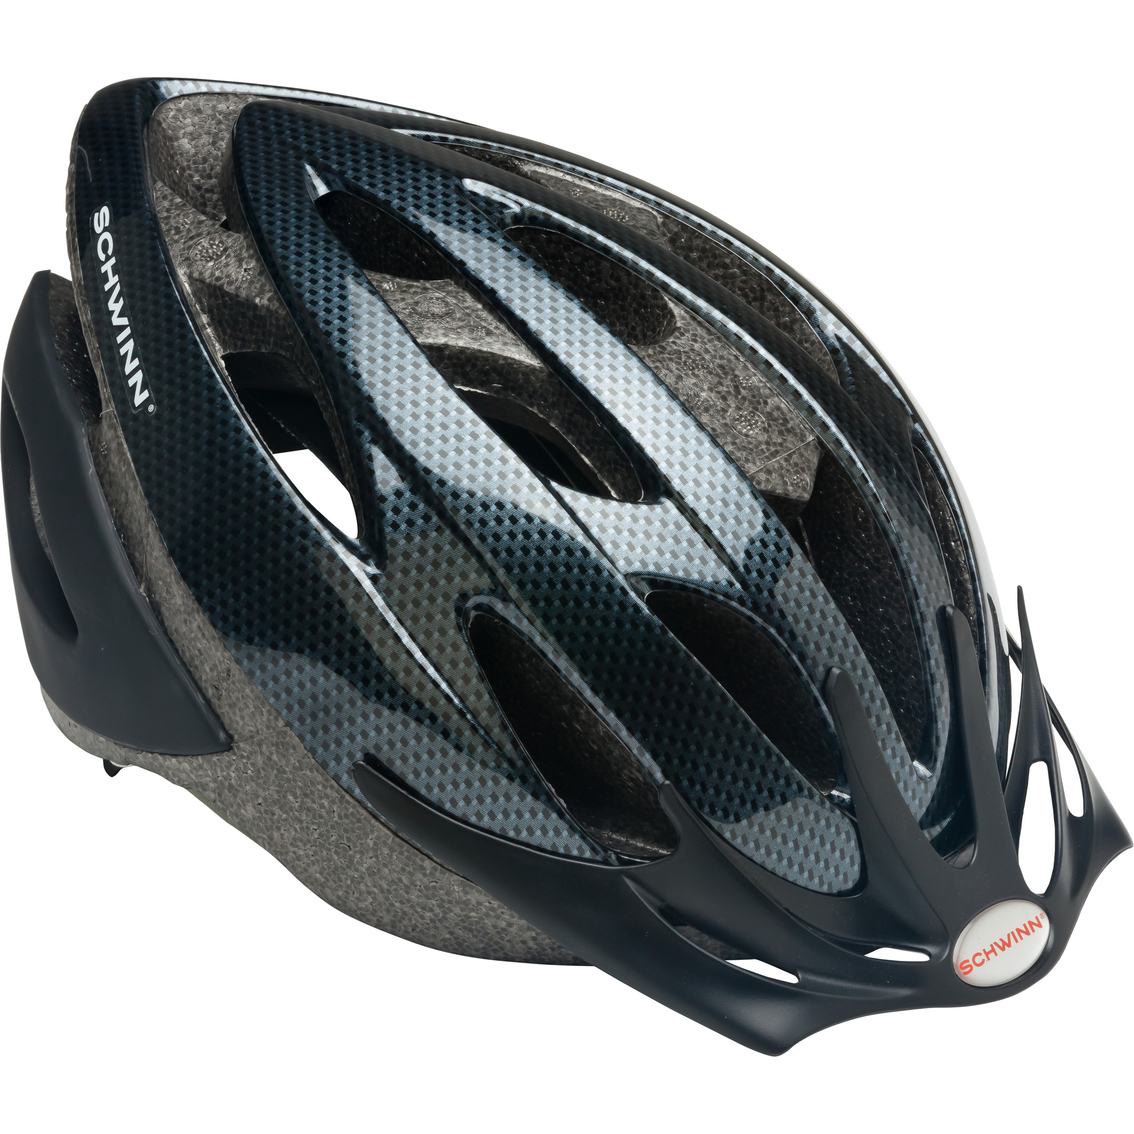 Schwinn Bike Helmets For Adults Factory Sale, 57% OFF | www 